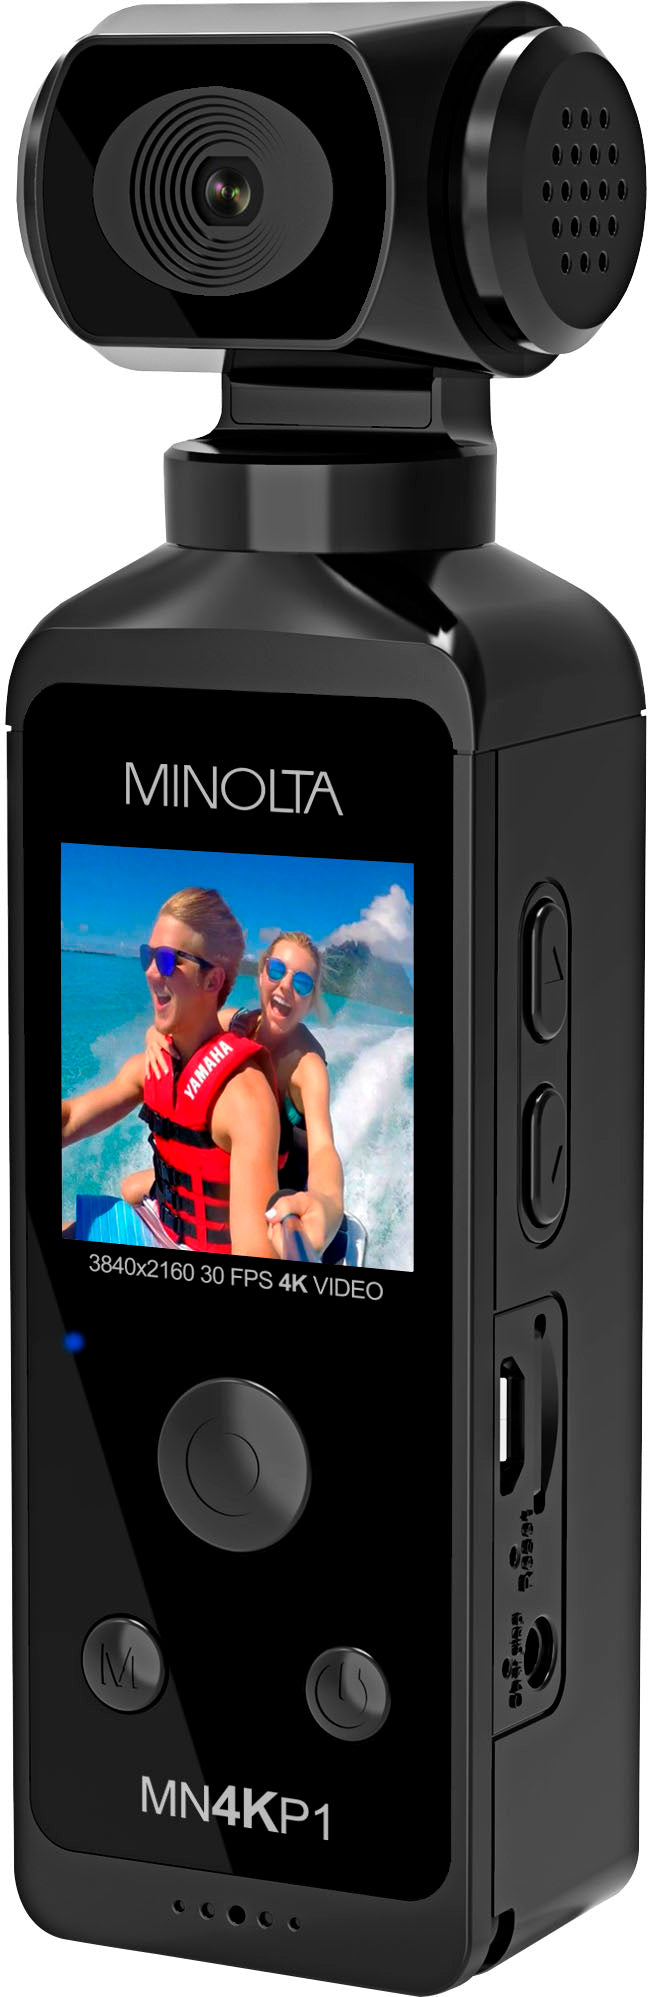 Konica Minolta - MN4KP1 4K Ultra HD WiFi Camcorder Kit - Black_1